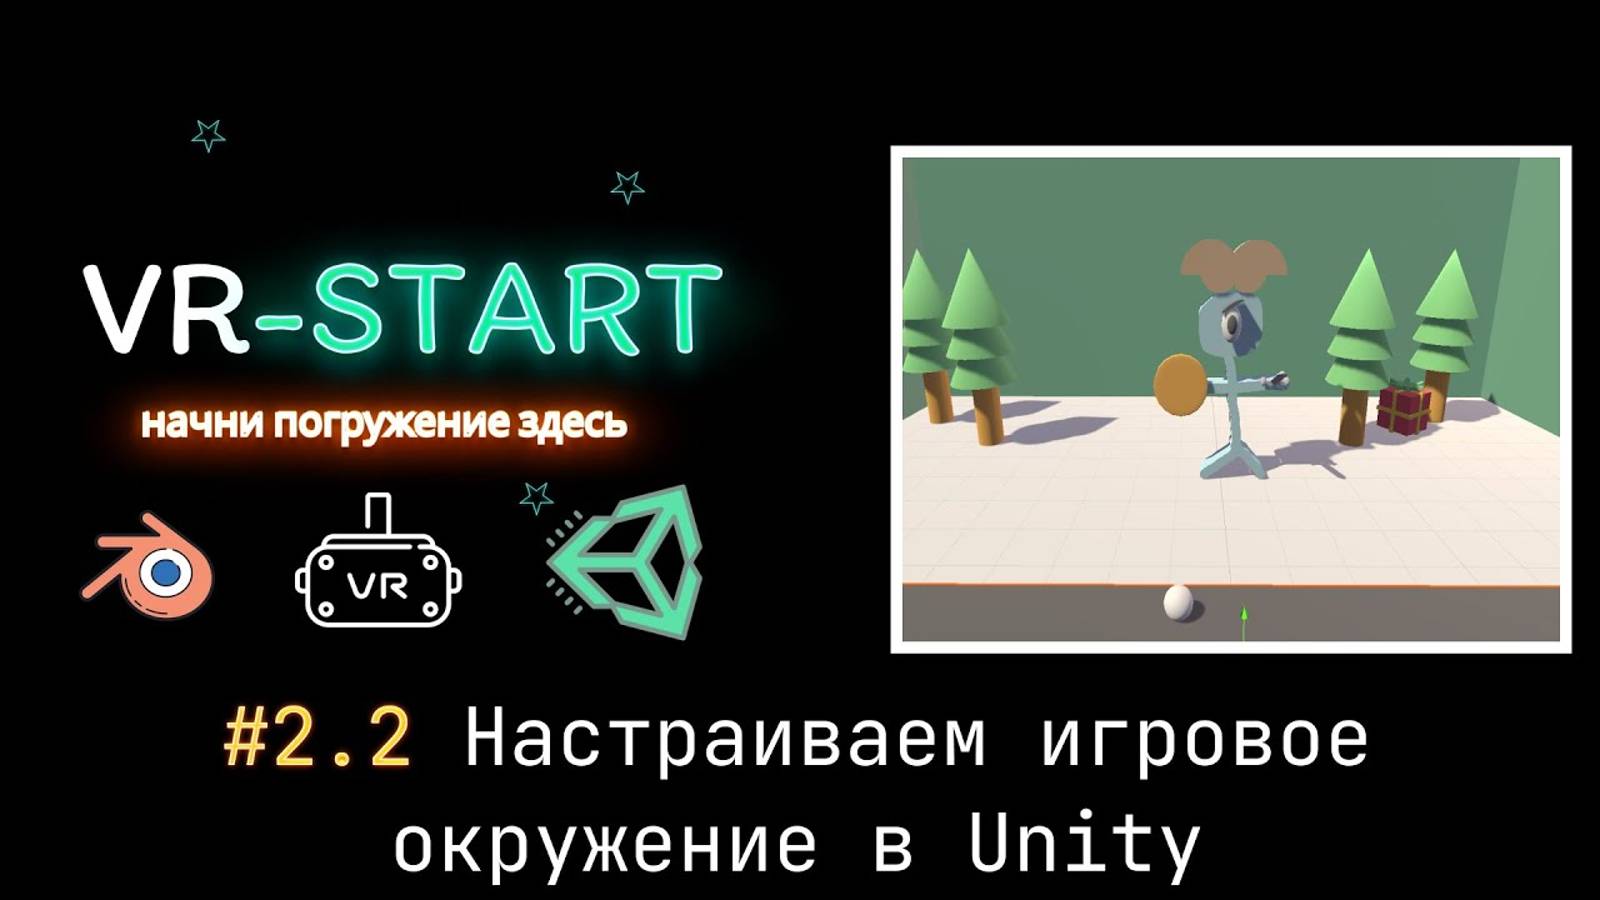 VR-Start. #2.2 Настраиваем игровое окружение в Unity